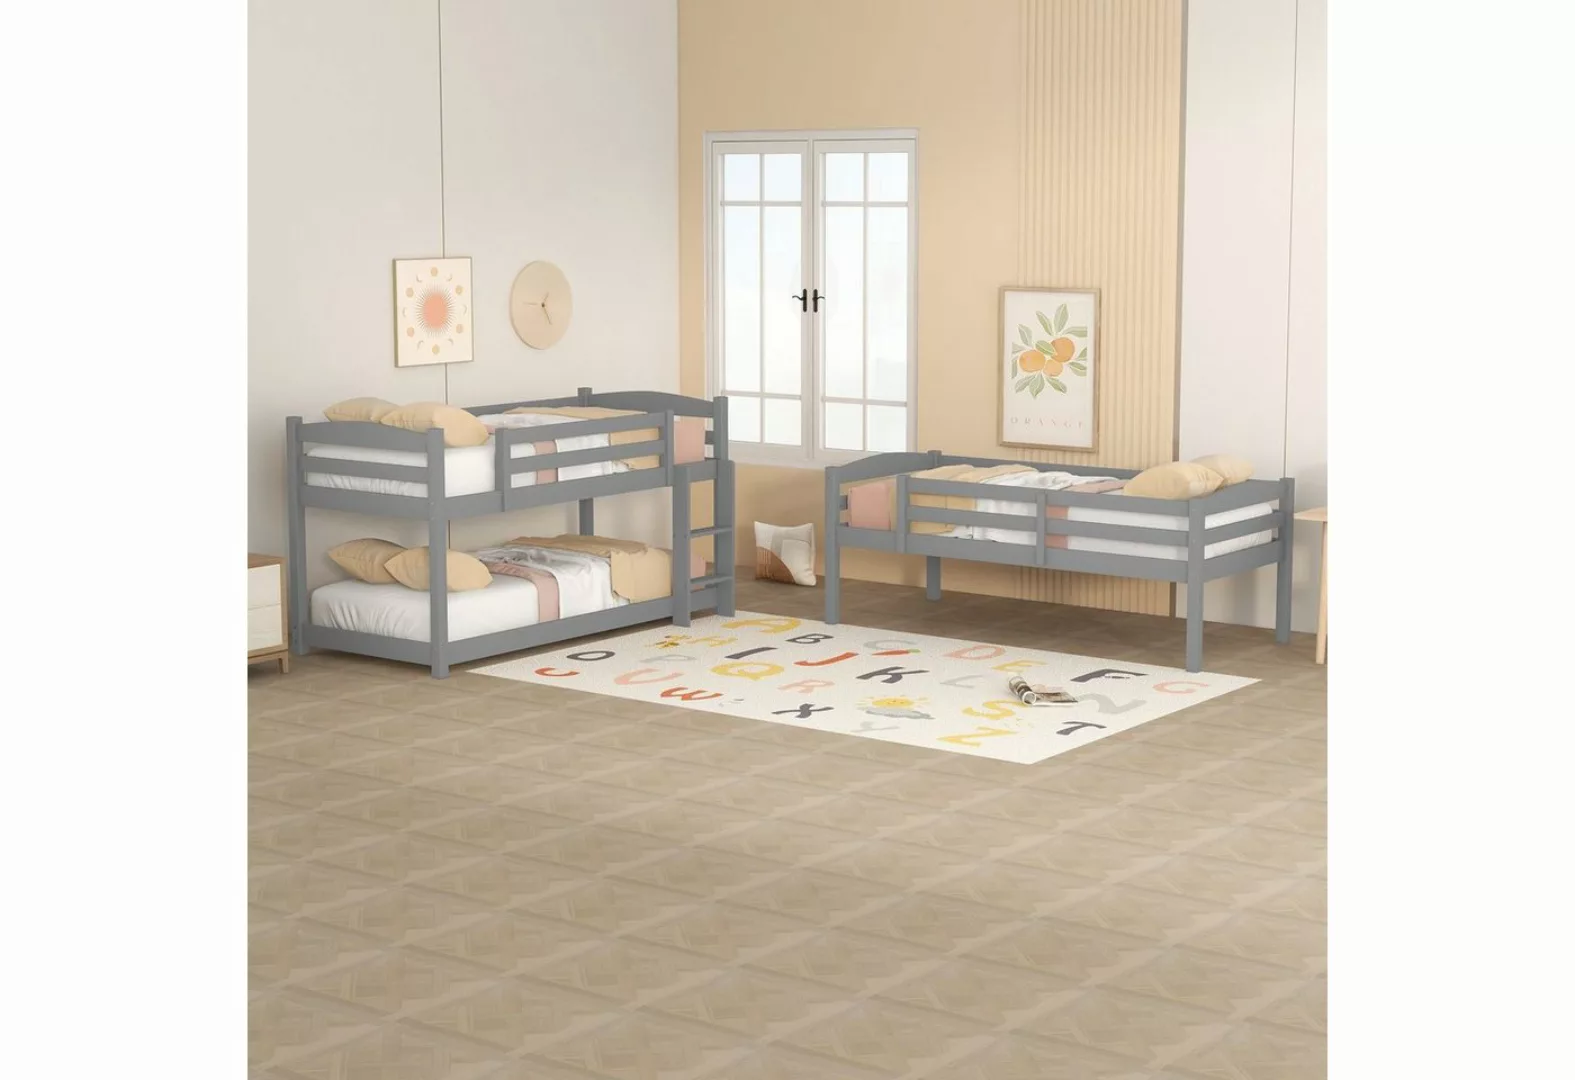 Celya Kinderbett Single-Size-Holz-Dreier-Etagenbett für Kinder 90×200cm, we günstig online kaufen